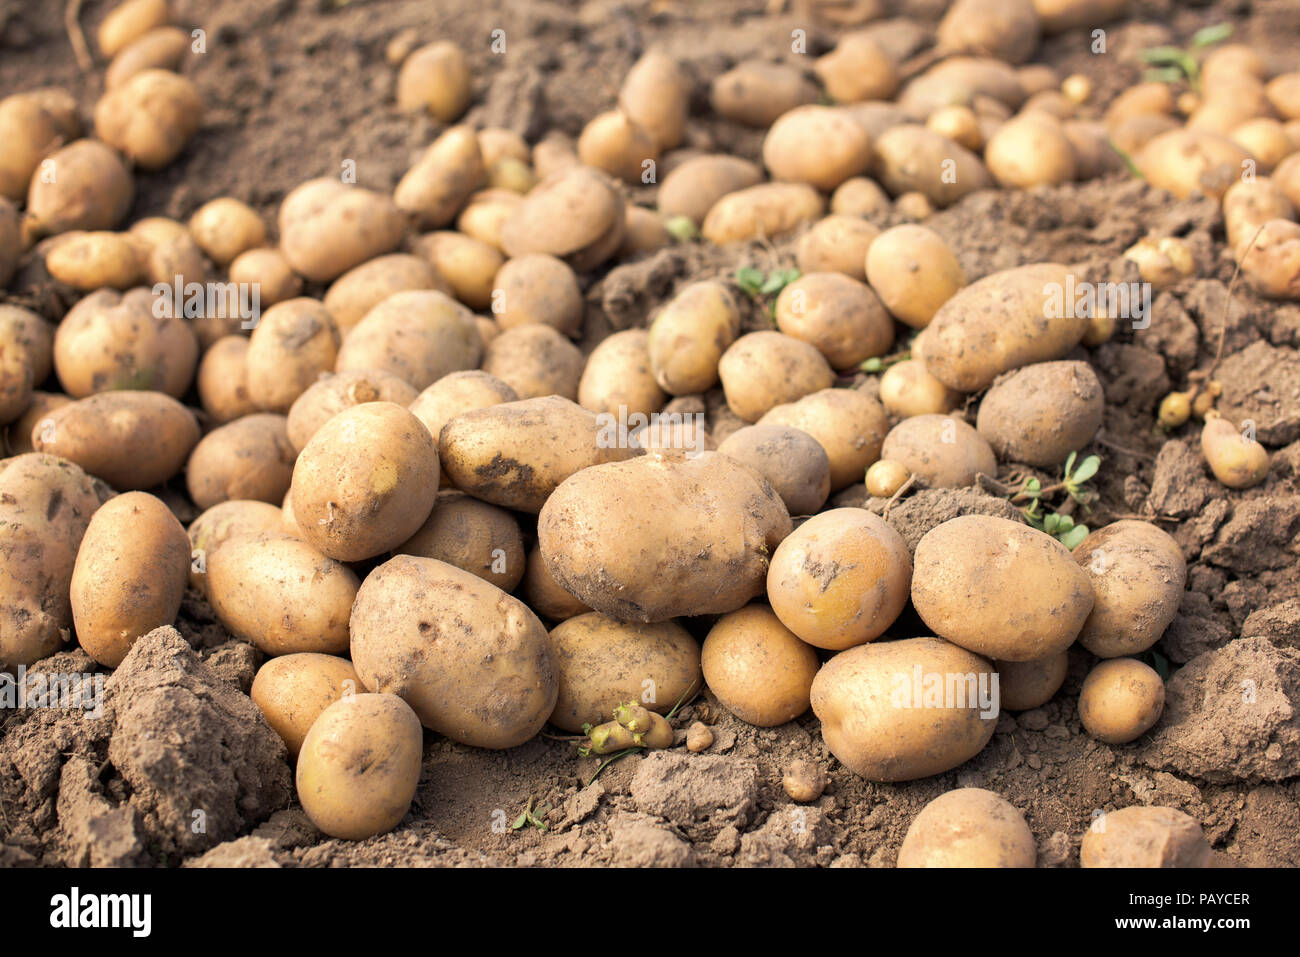 Reif Kartoffeln Aus Der Erde In Ein Ackerland Stockfotografie Alamy